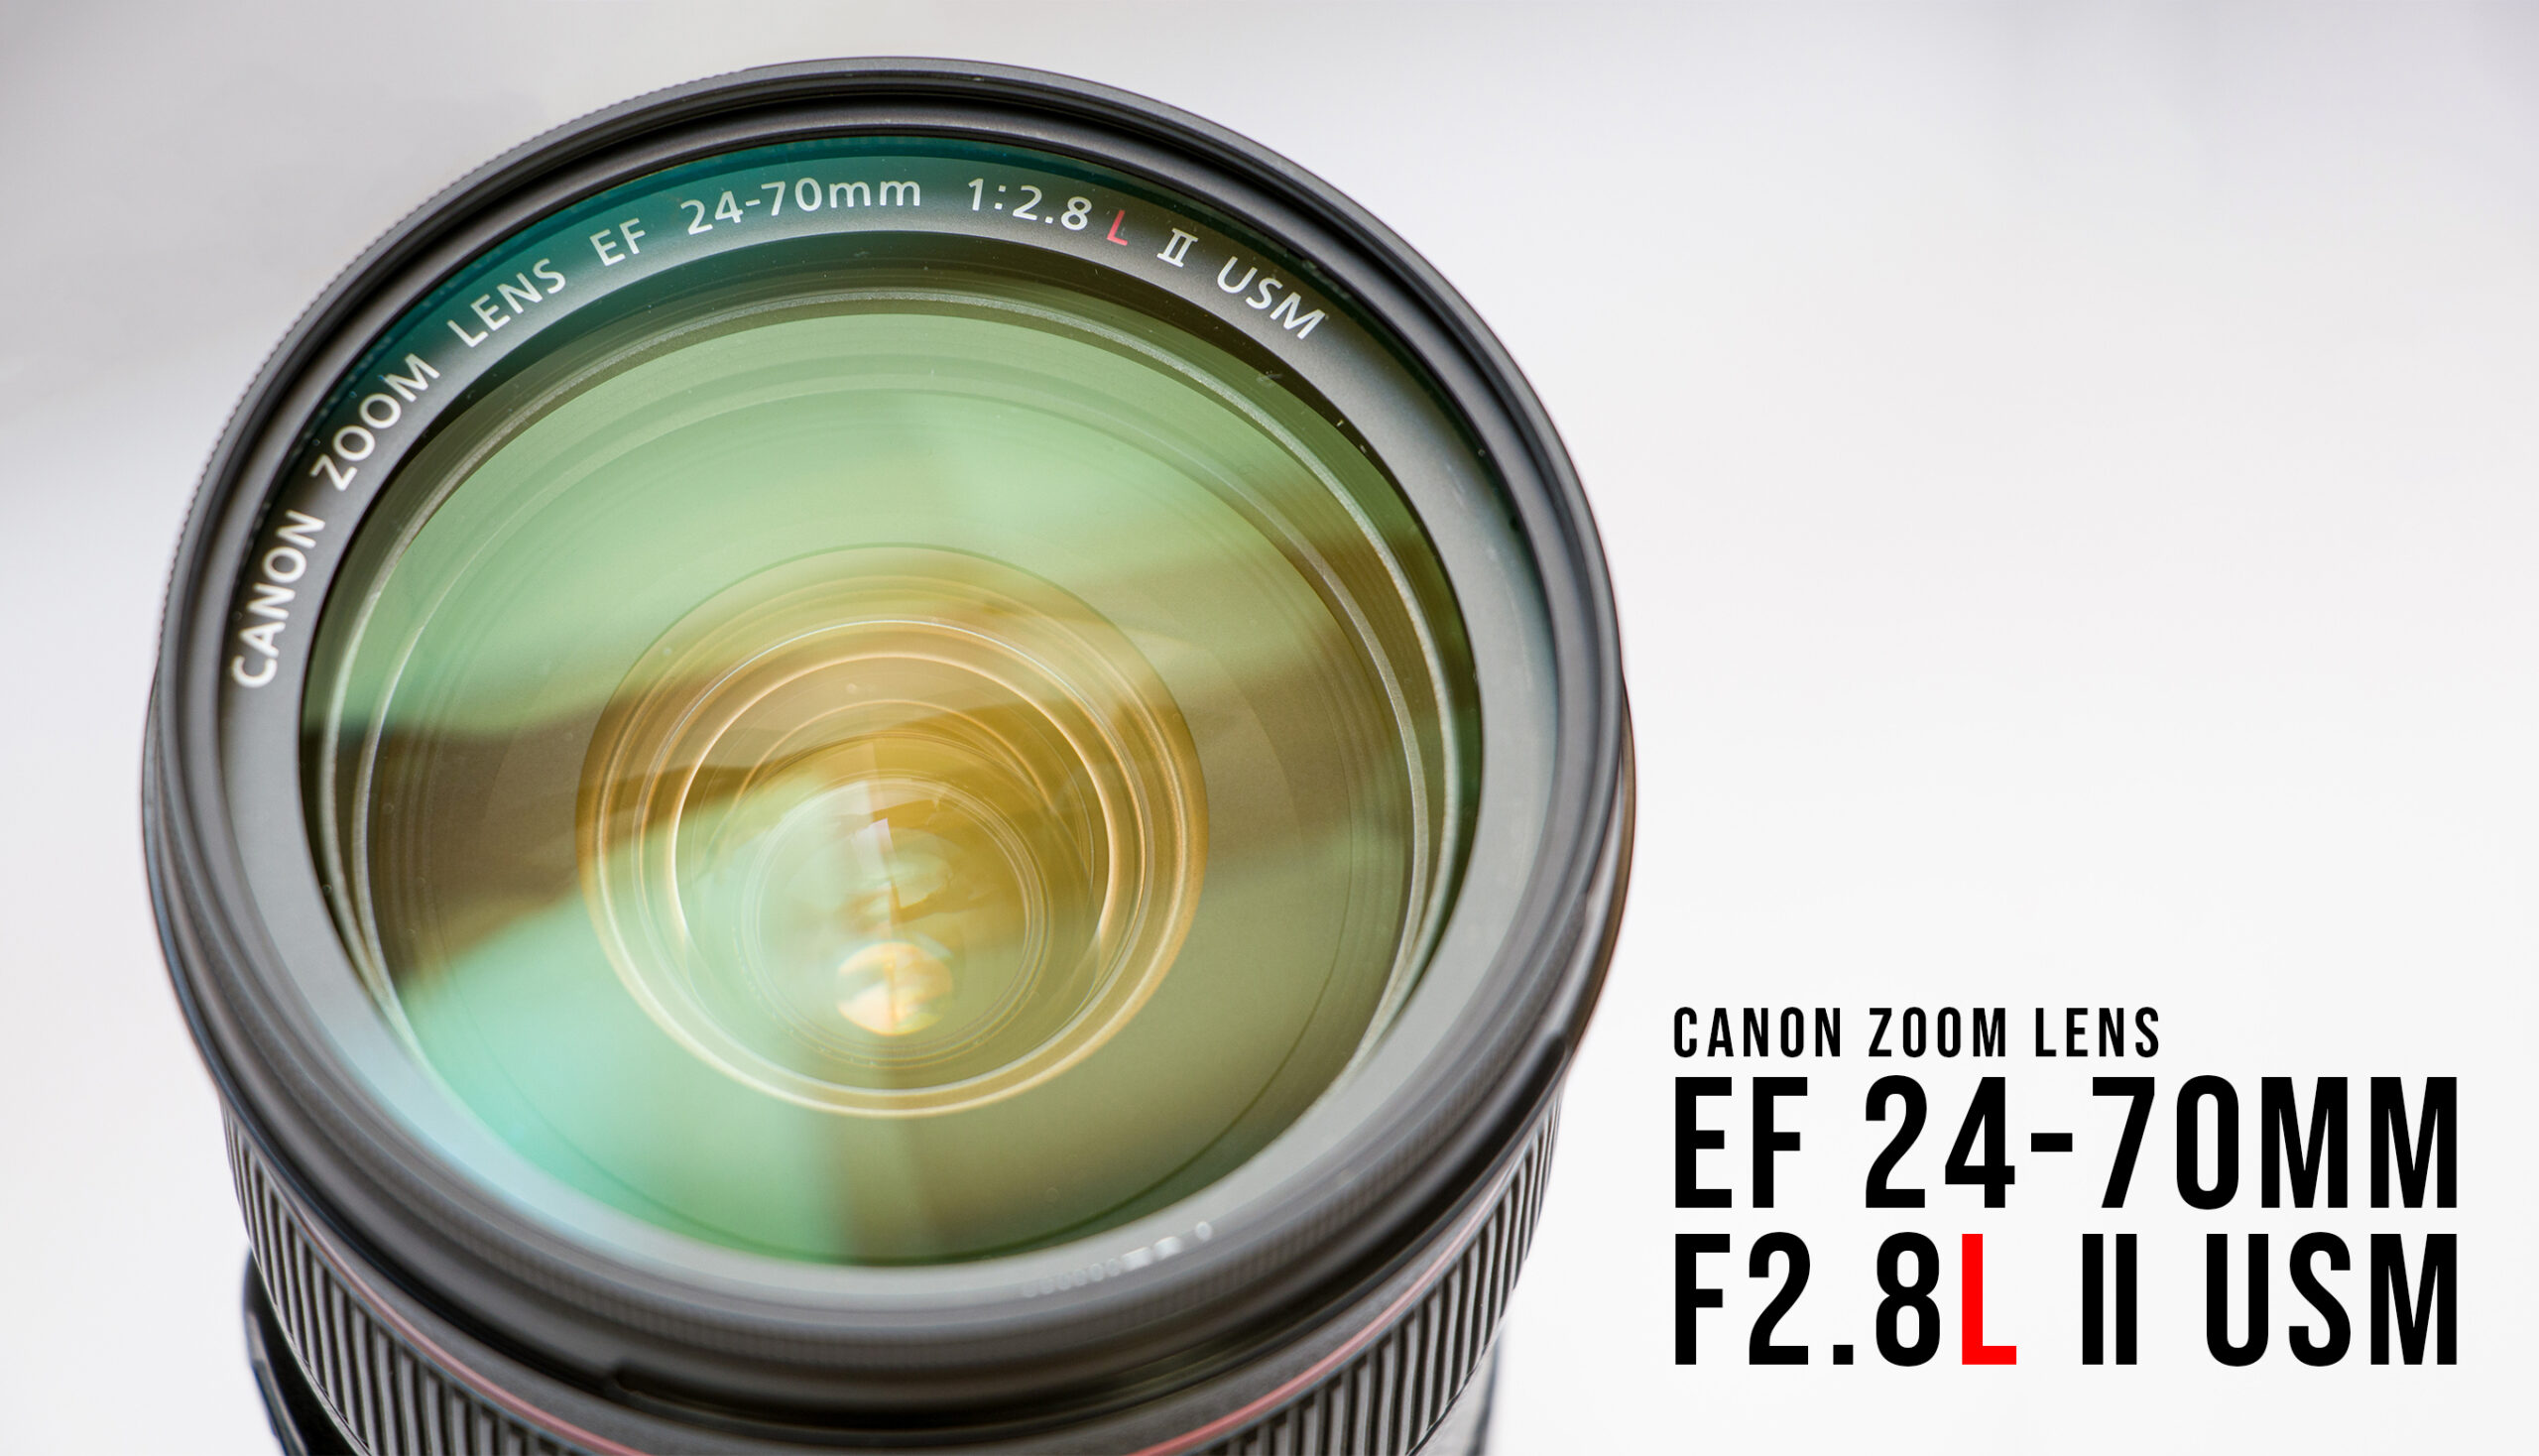 Canon キヤノン EF24-70mm f2.8L II USM 12日まで